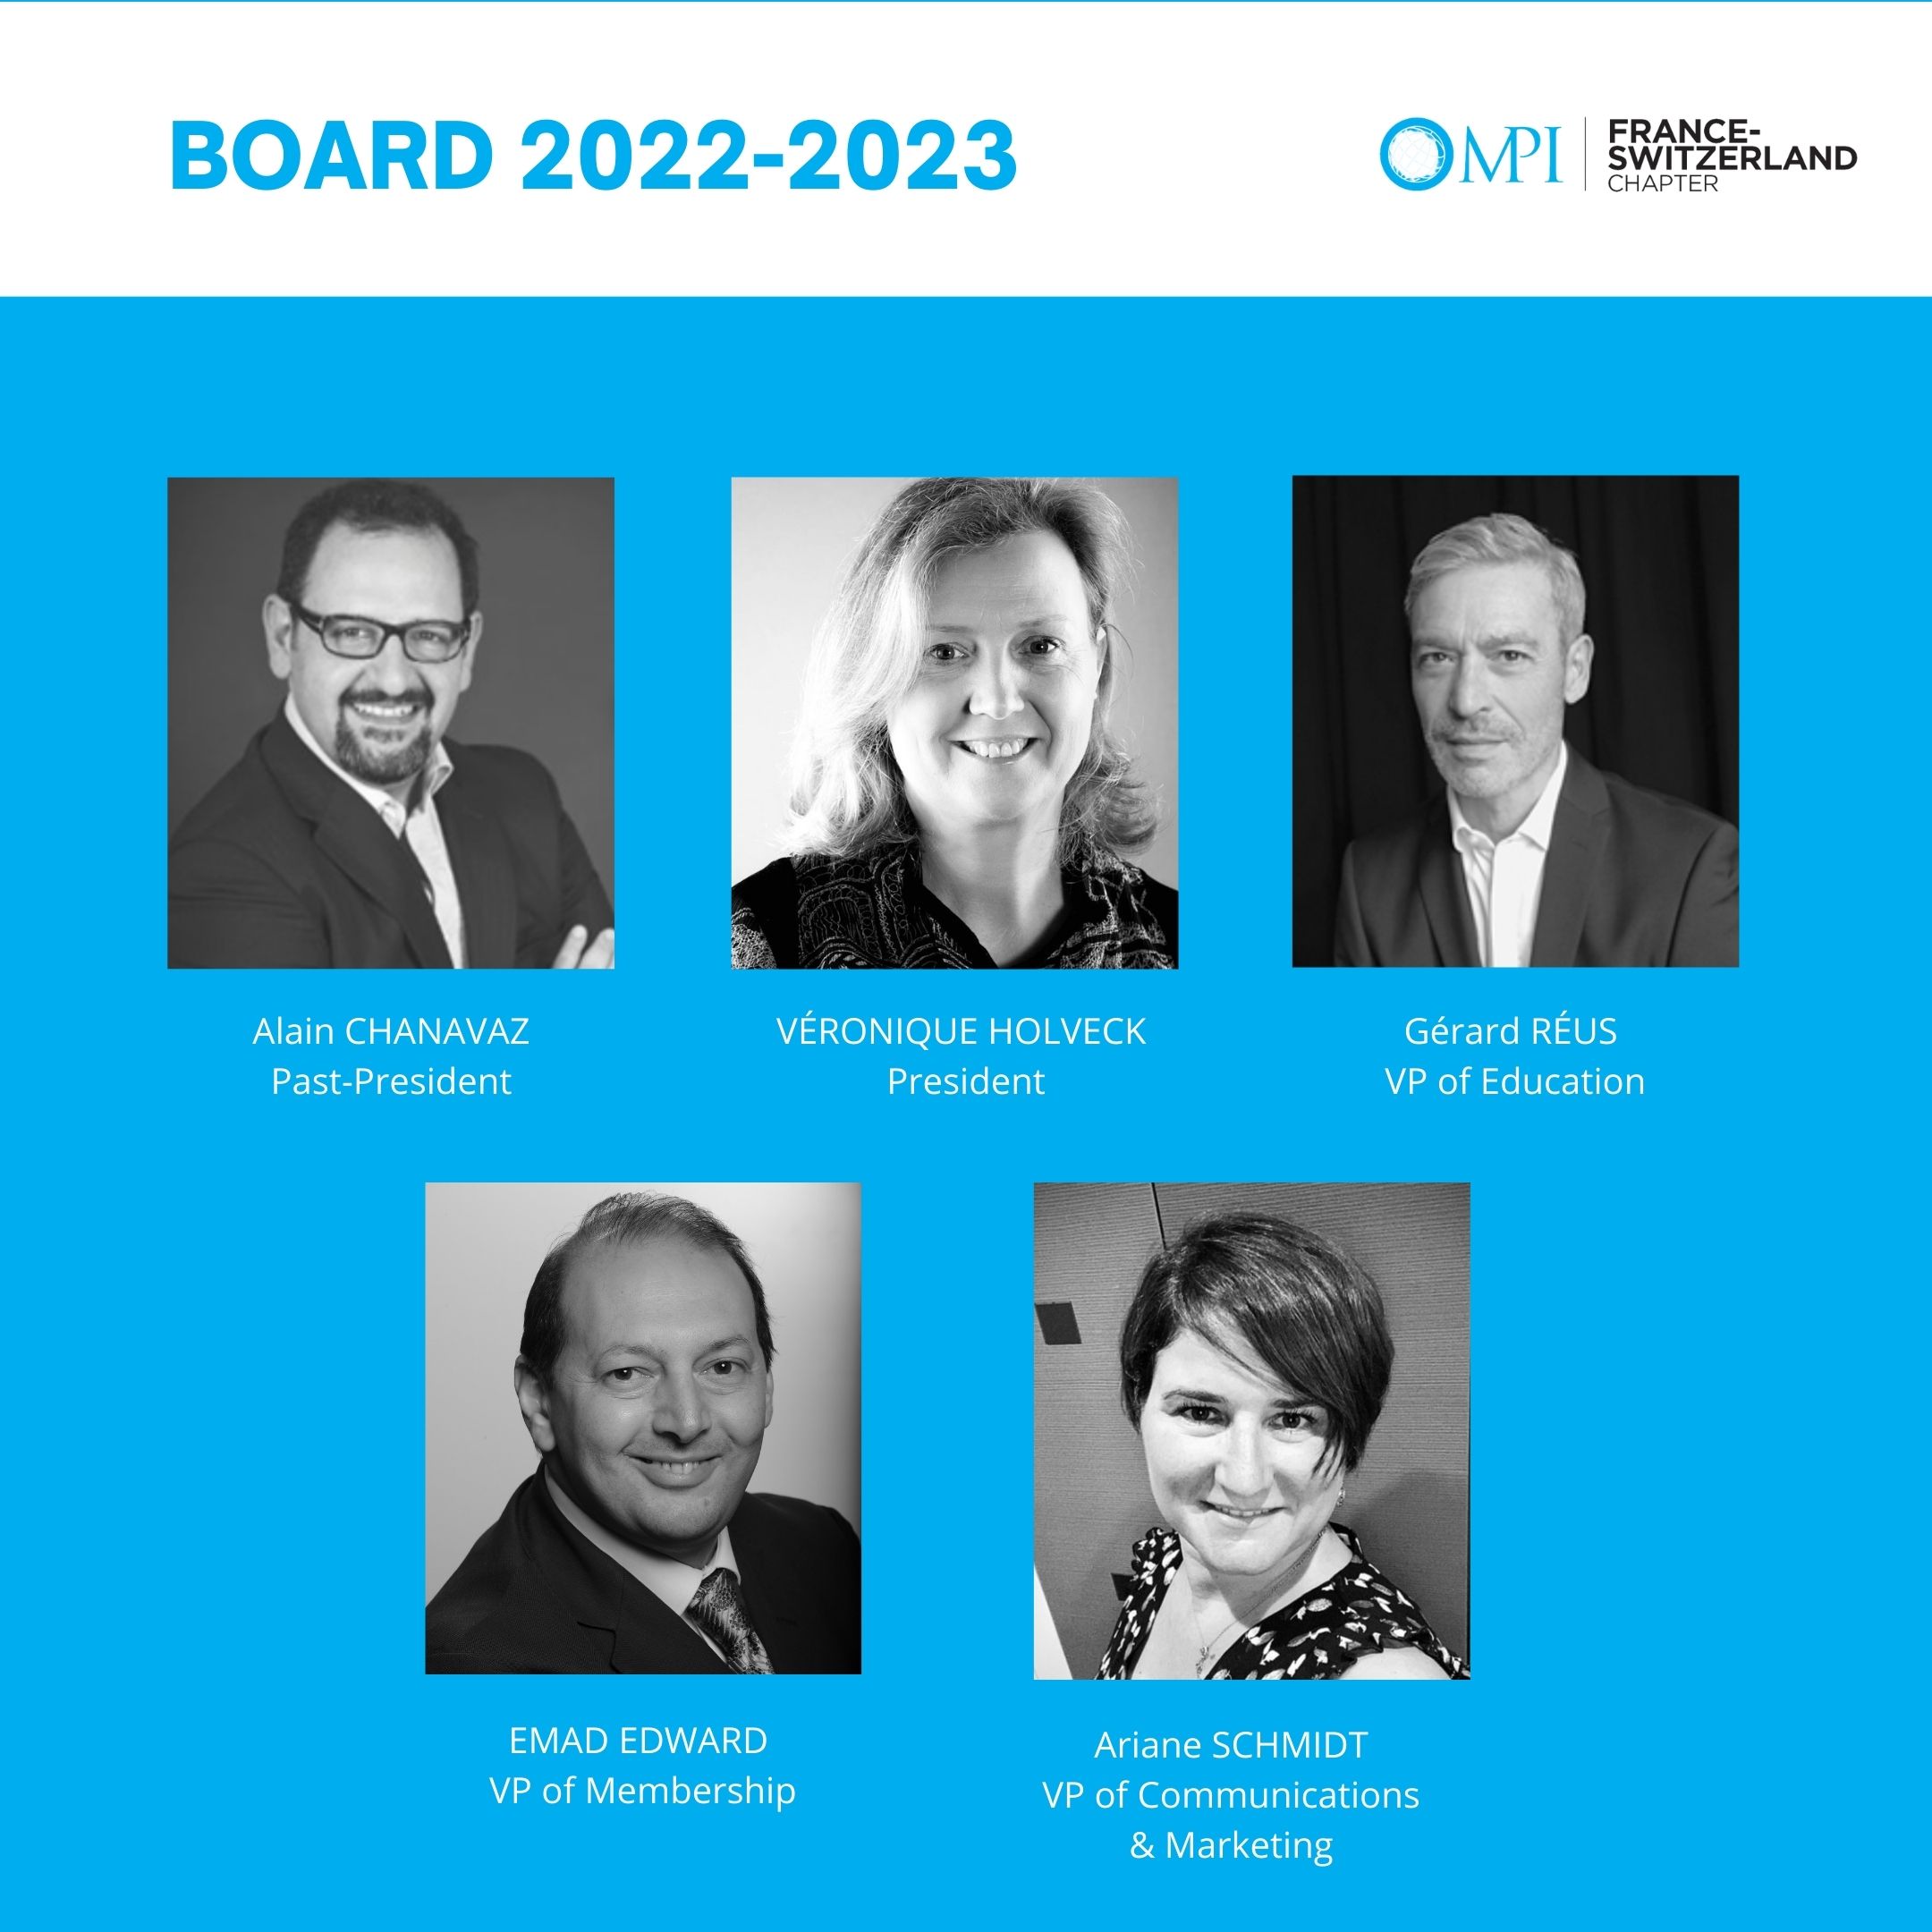 MPI France Board 2022-2023